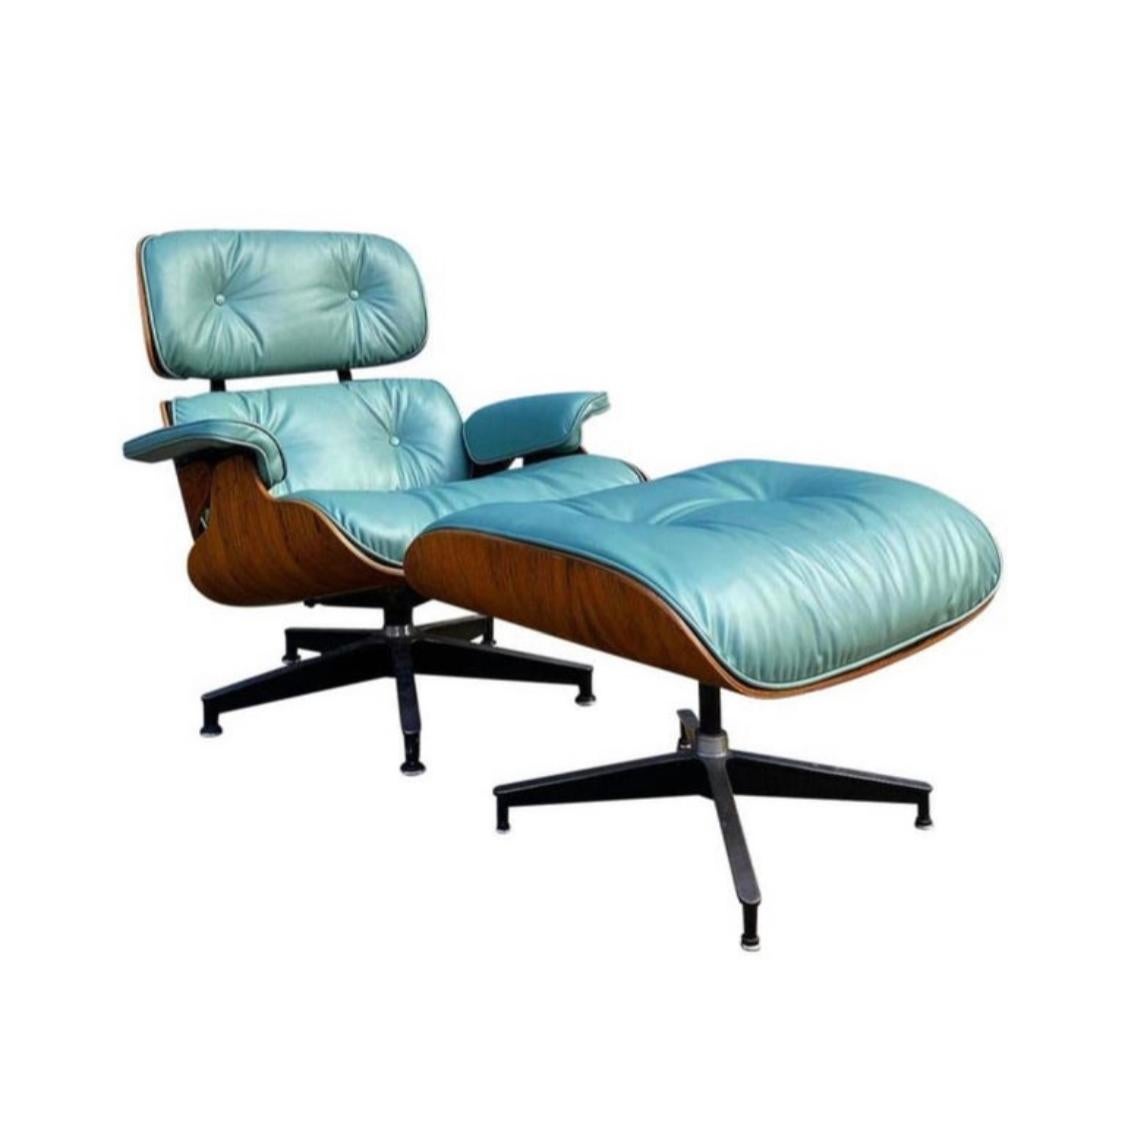 Édition incroyablement vivante et élégante de la chaise longue et de l'ottoman classiques Eames de Herman Miller, circa 1960-70s chaise avec l'étiquette originale de Herman Miller. Coussins en cuir sur mesure en superbe état. Cette teinte n'est pas